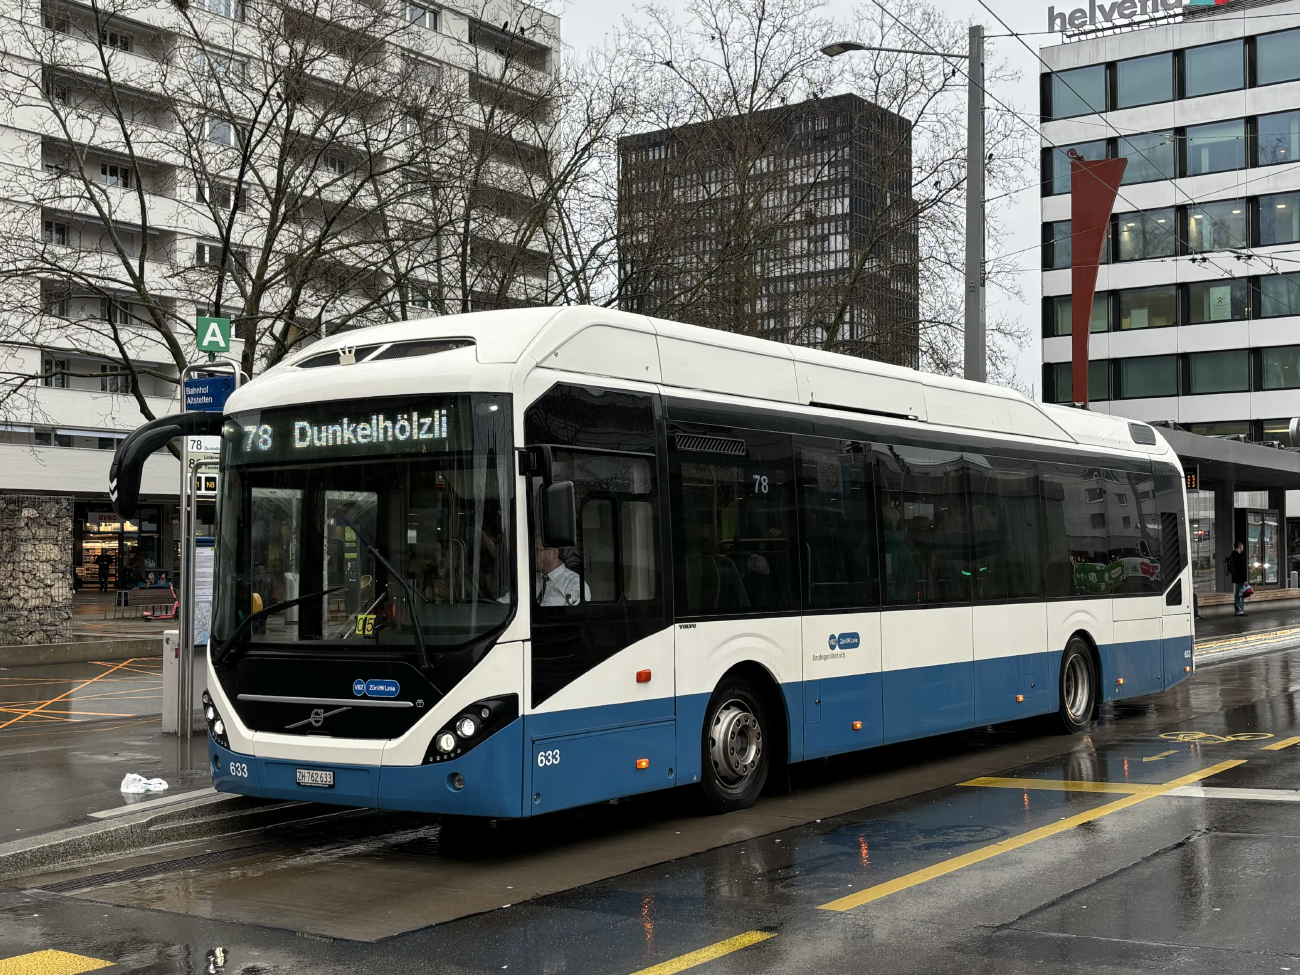 Zurich, Volvo 7900 Electric Hybrid # 633